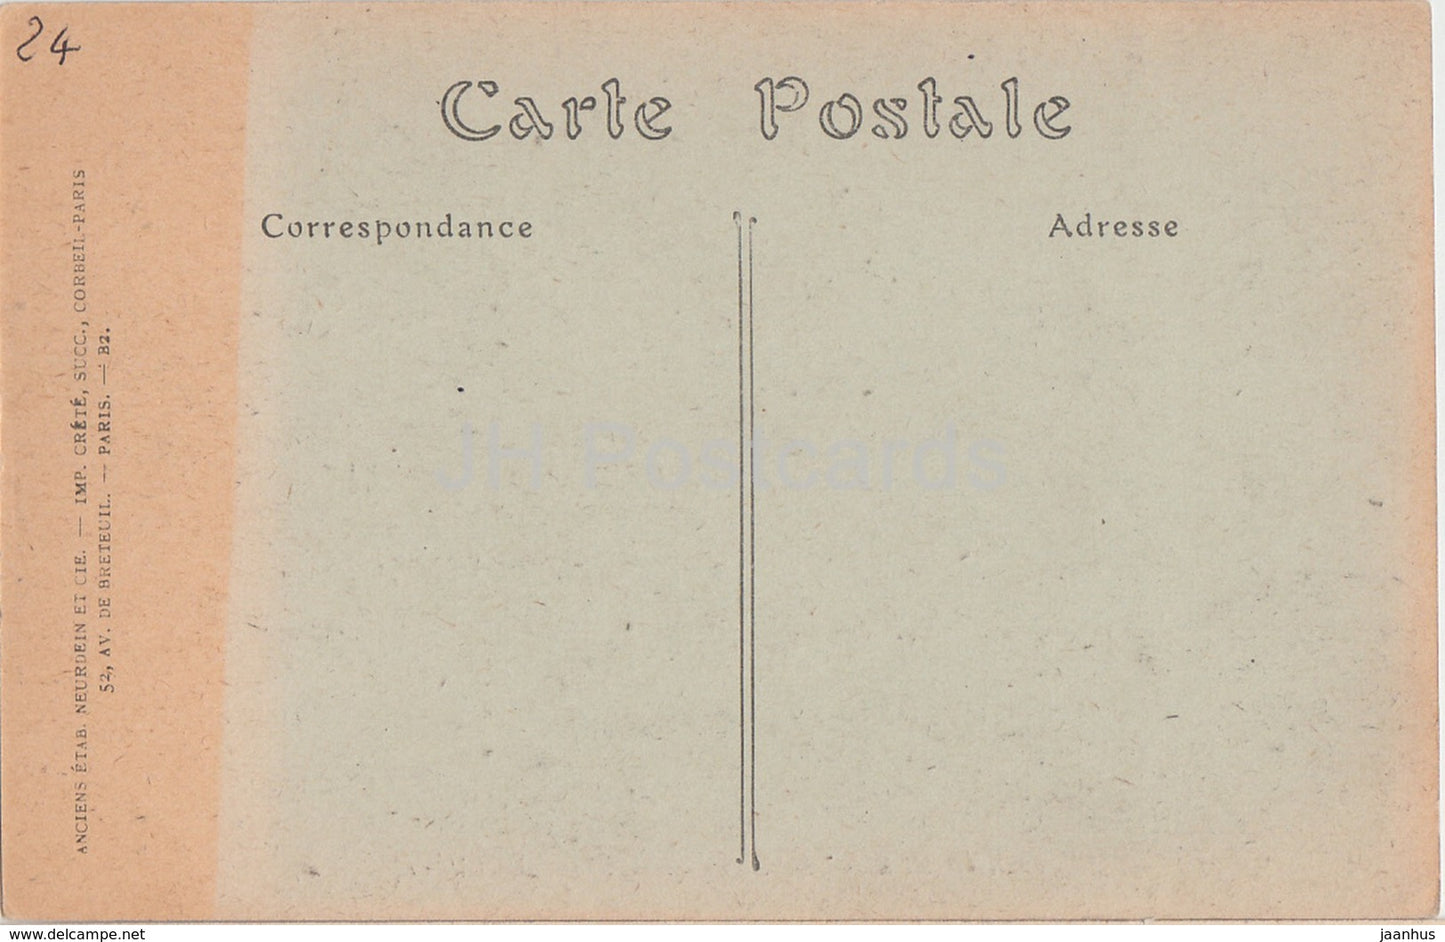 Périgueux - Basilique Saint Front - Le Choeur - cathédrale - 140 - carte postale ancienne - France - inutilisée